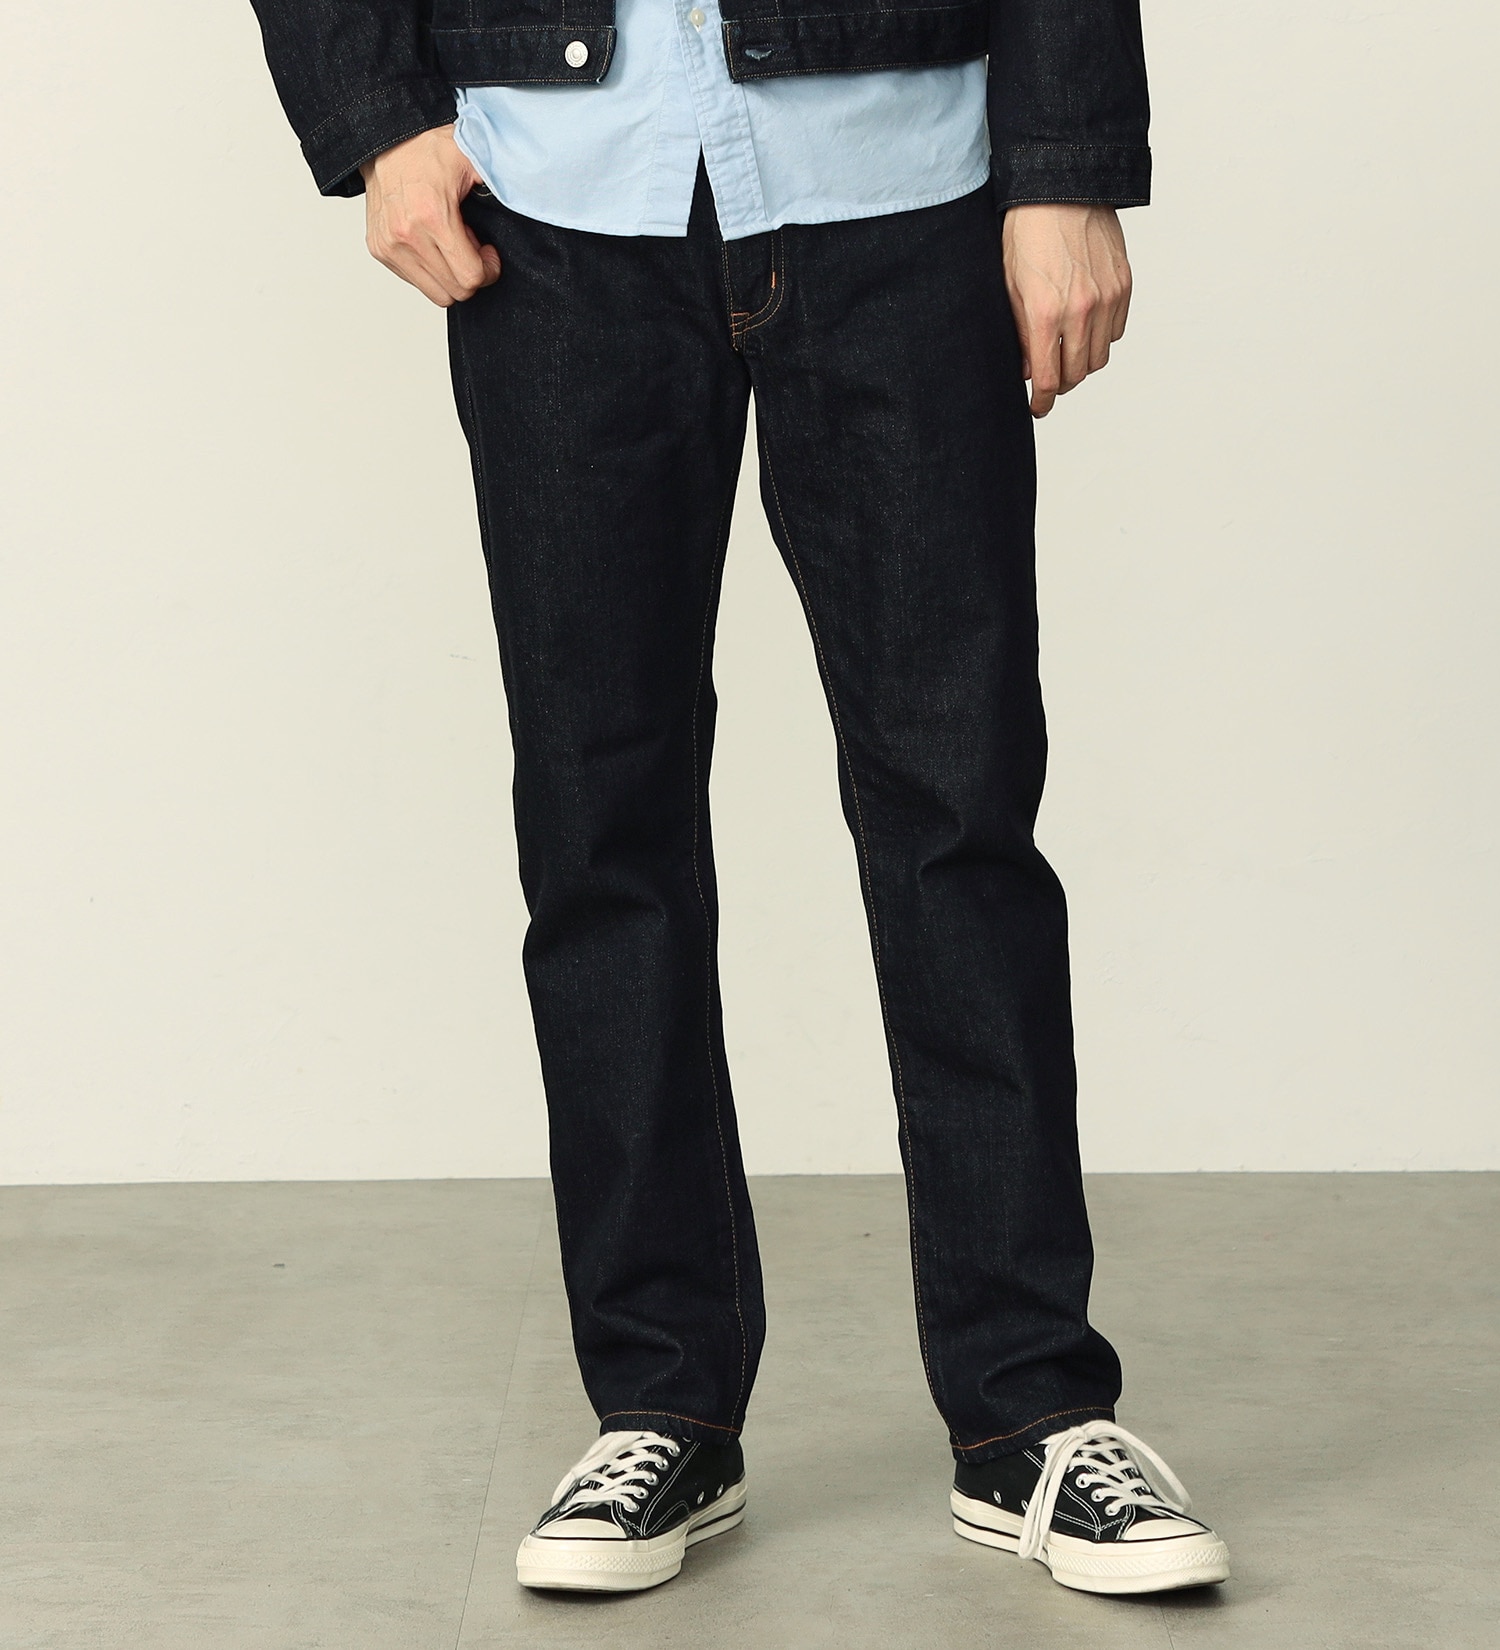 【BLACKFRIDAY】【WEB限定】五・八デニム レギュラーストレートデニムパンツ ふつうのジーンズ 日本製 MADE IN JAPAN